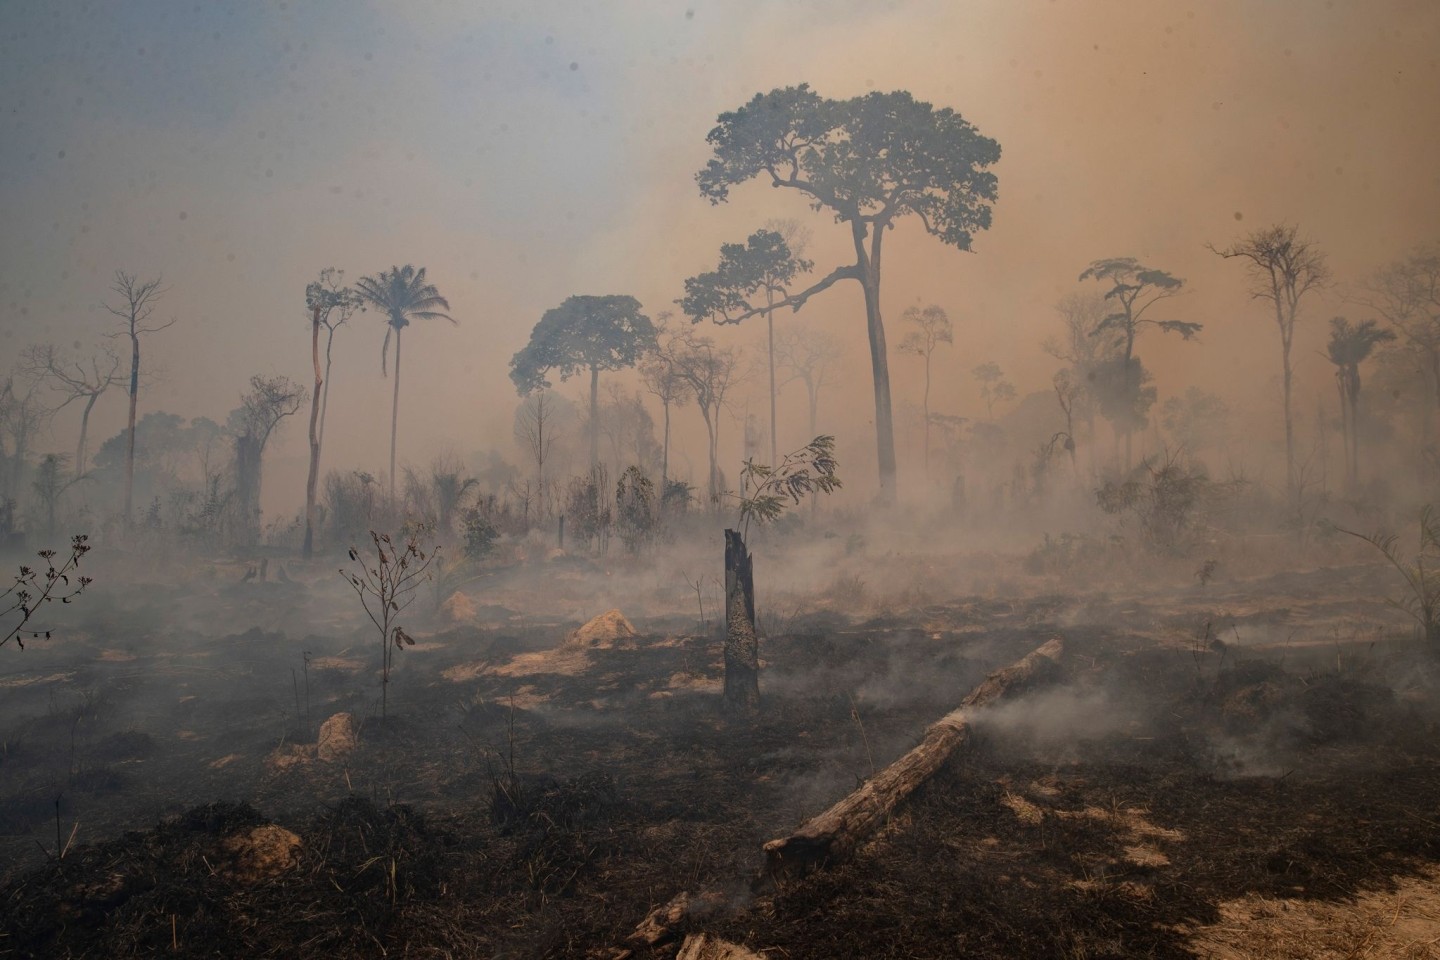 Rauch steigt während eines Brandes im Amazonas-Gebiet auf.